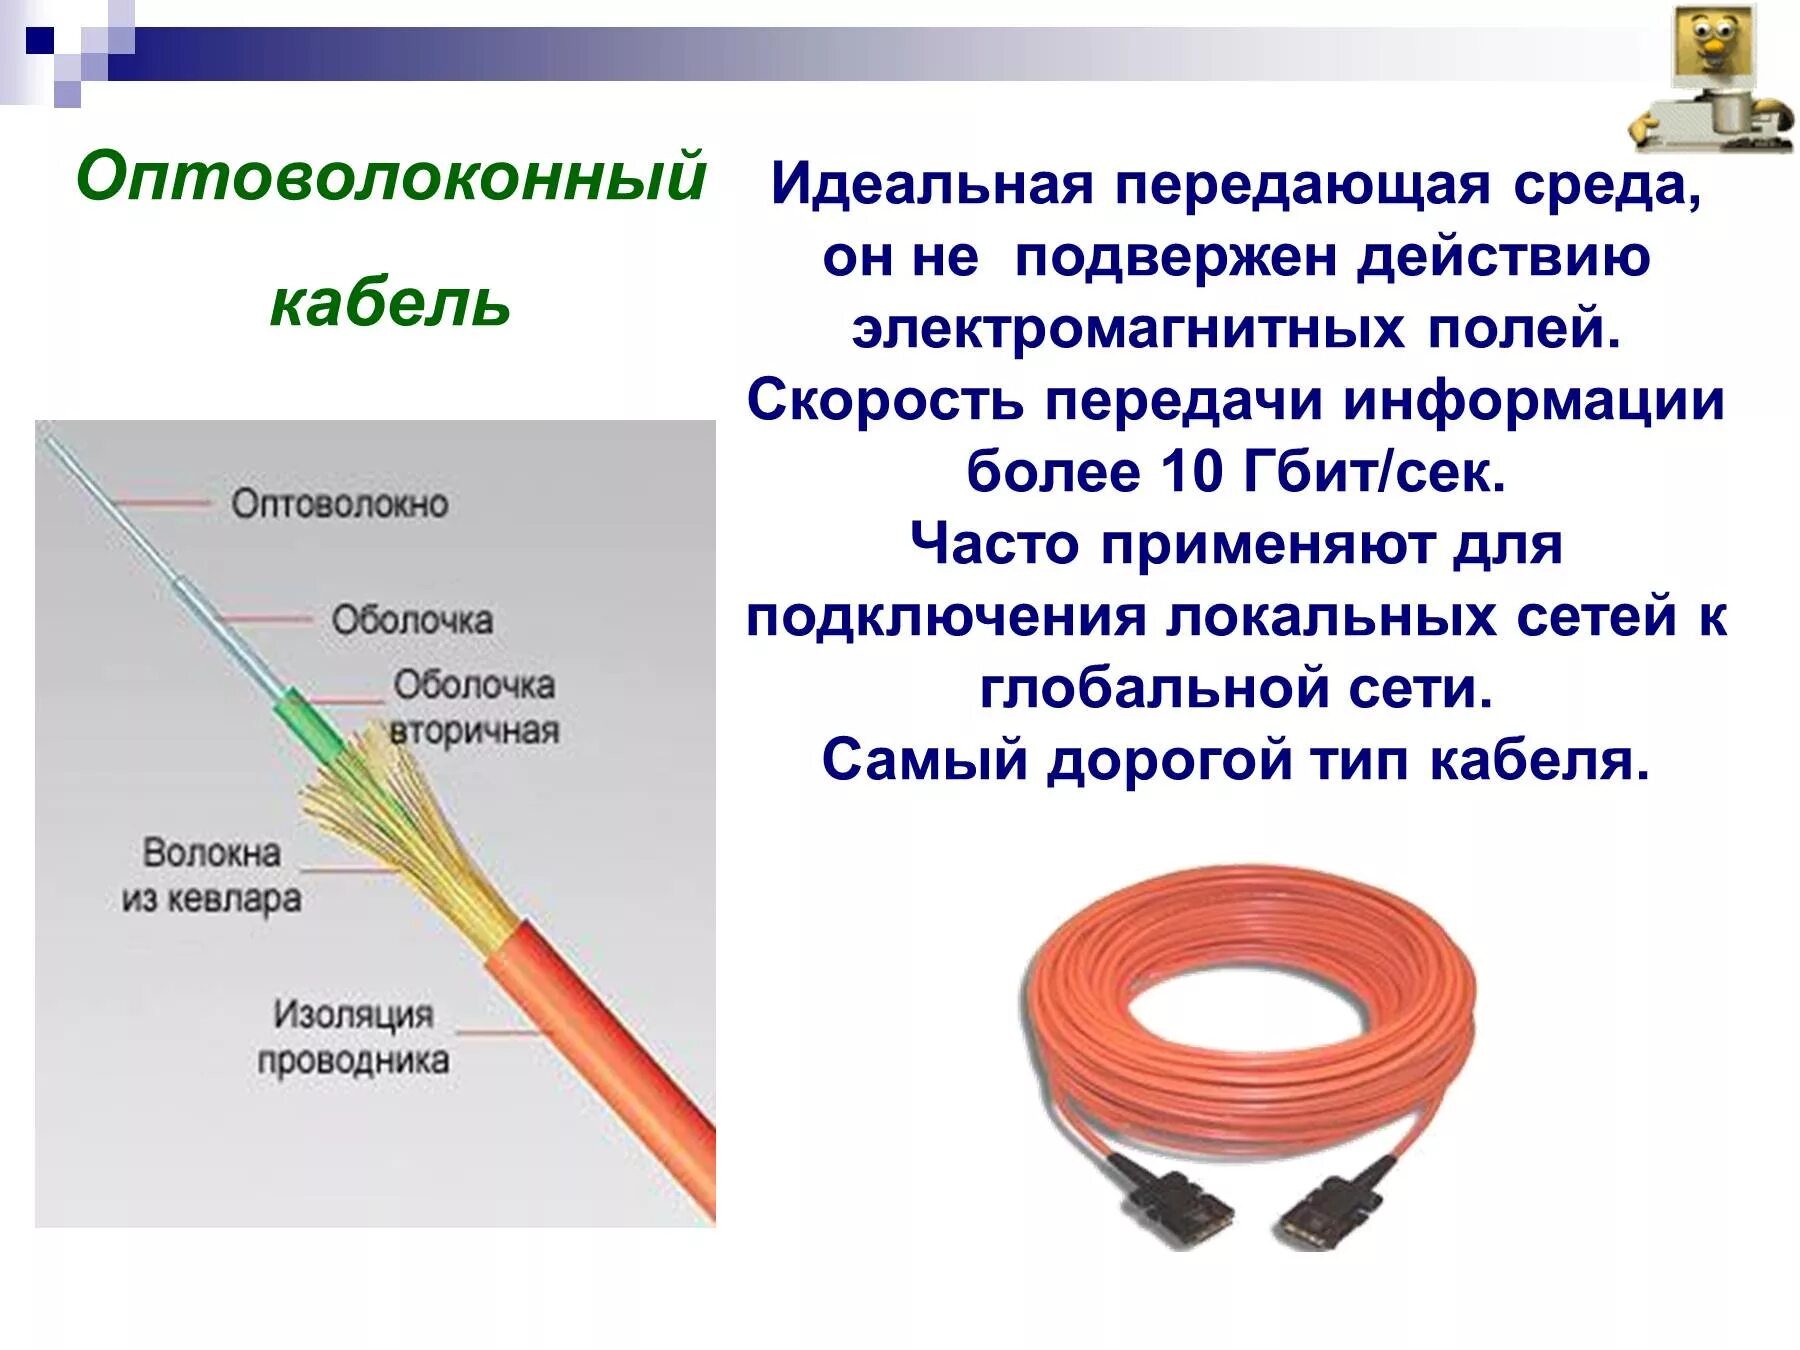 Соединение оптического кабеля. Волокнооптические кабеля скорость передачи. Волоконно оптический кабель скорость передачи данных. Витая пара скорость передачи и оптоволокно. Скорость передачи данных по волоконно-оптическому кабелю.